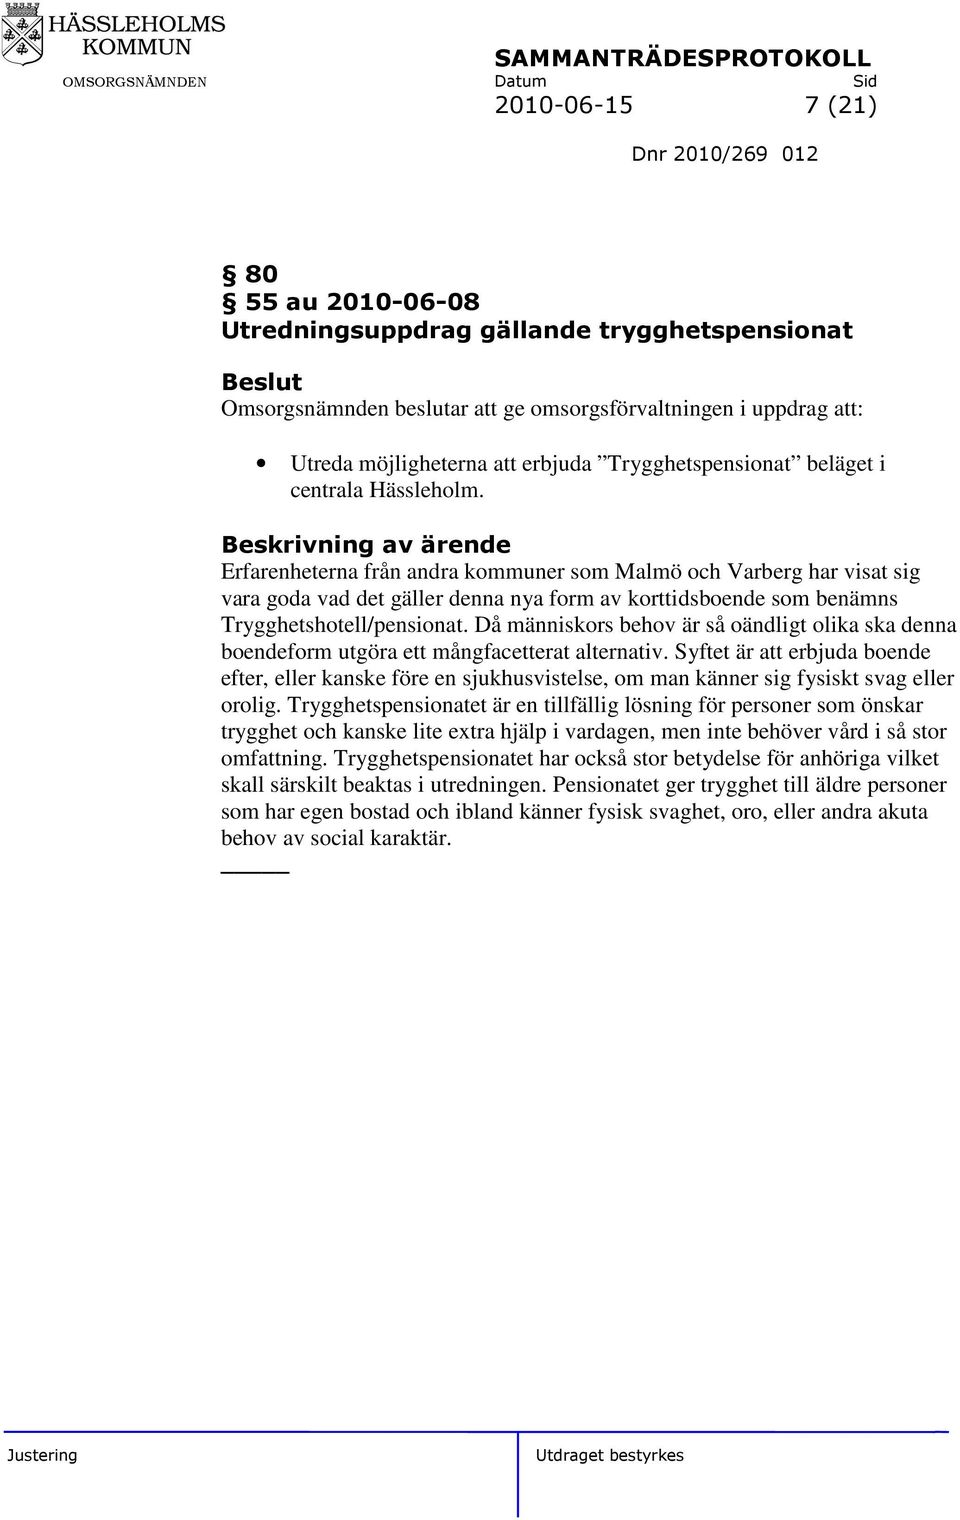 Erfarenheterna från andra kommuner som Malmö och Varberg har visat sig vara goda vad det gäller denna nya form av korttidsboende som benämns Trygghetshotell/pensionat.